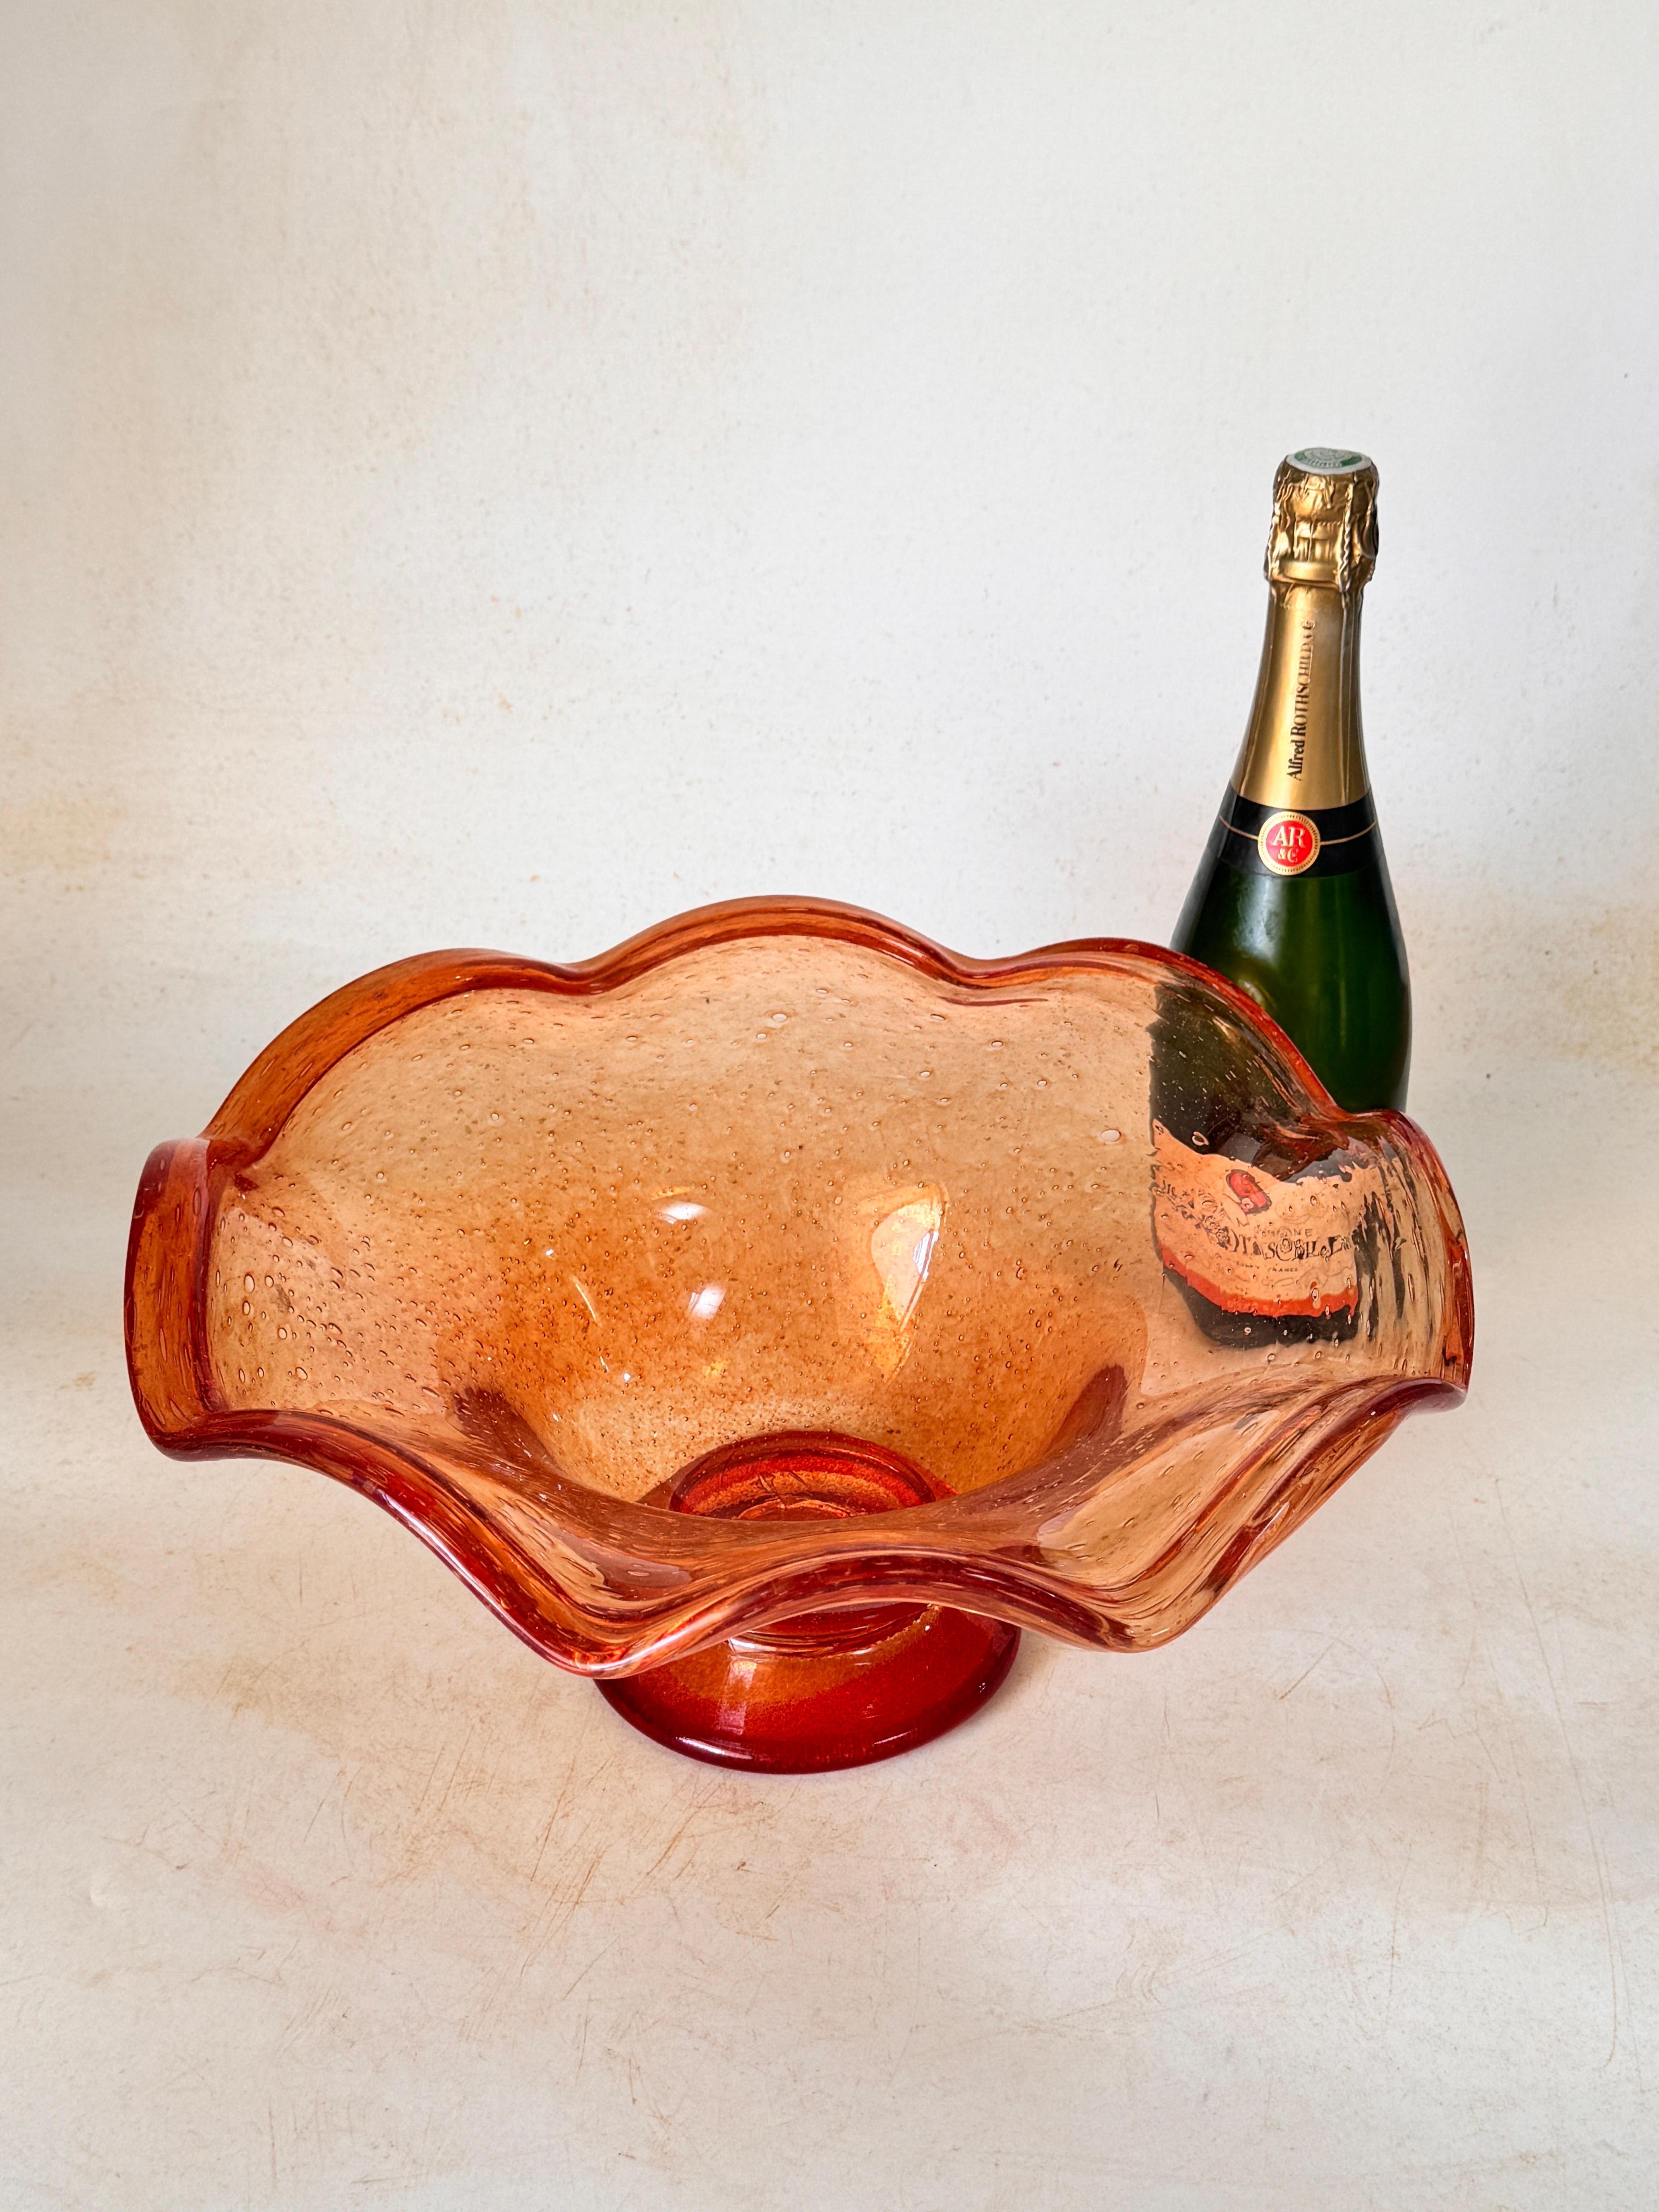 1960, coupe à fruits, centre de table ou vide poche, dans ce beau verre de Biot, verrerie réputée du sud de la France près de Vallauris.
Couleur orange et rouge.